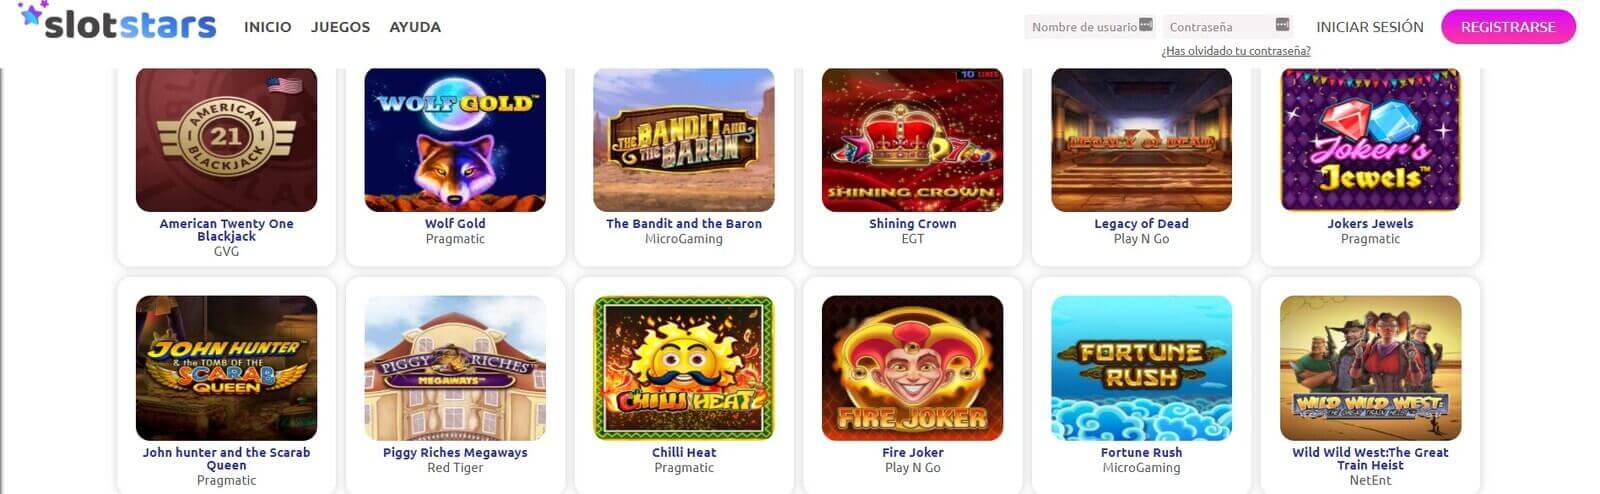 Mejores juegos de casino SlotStar online en España